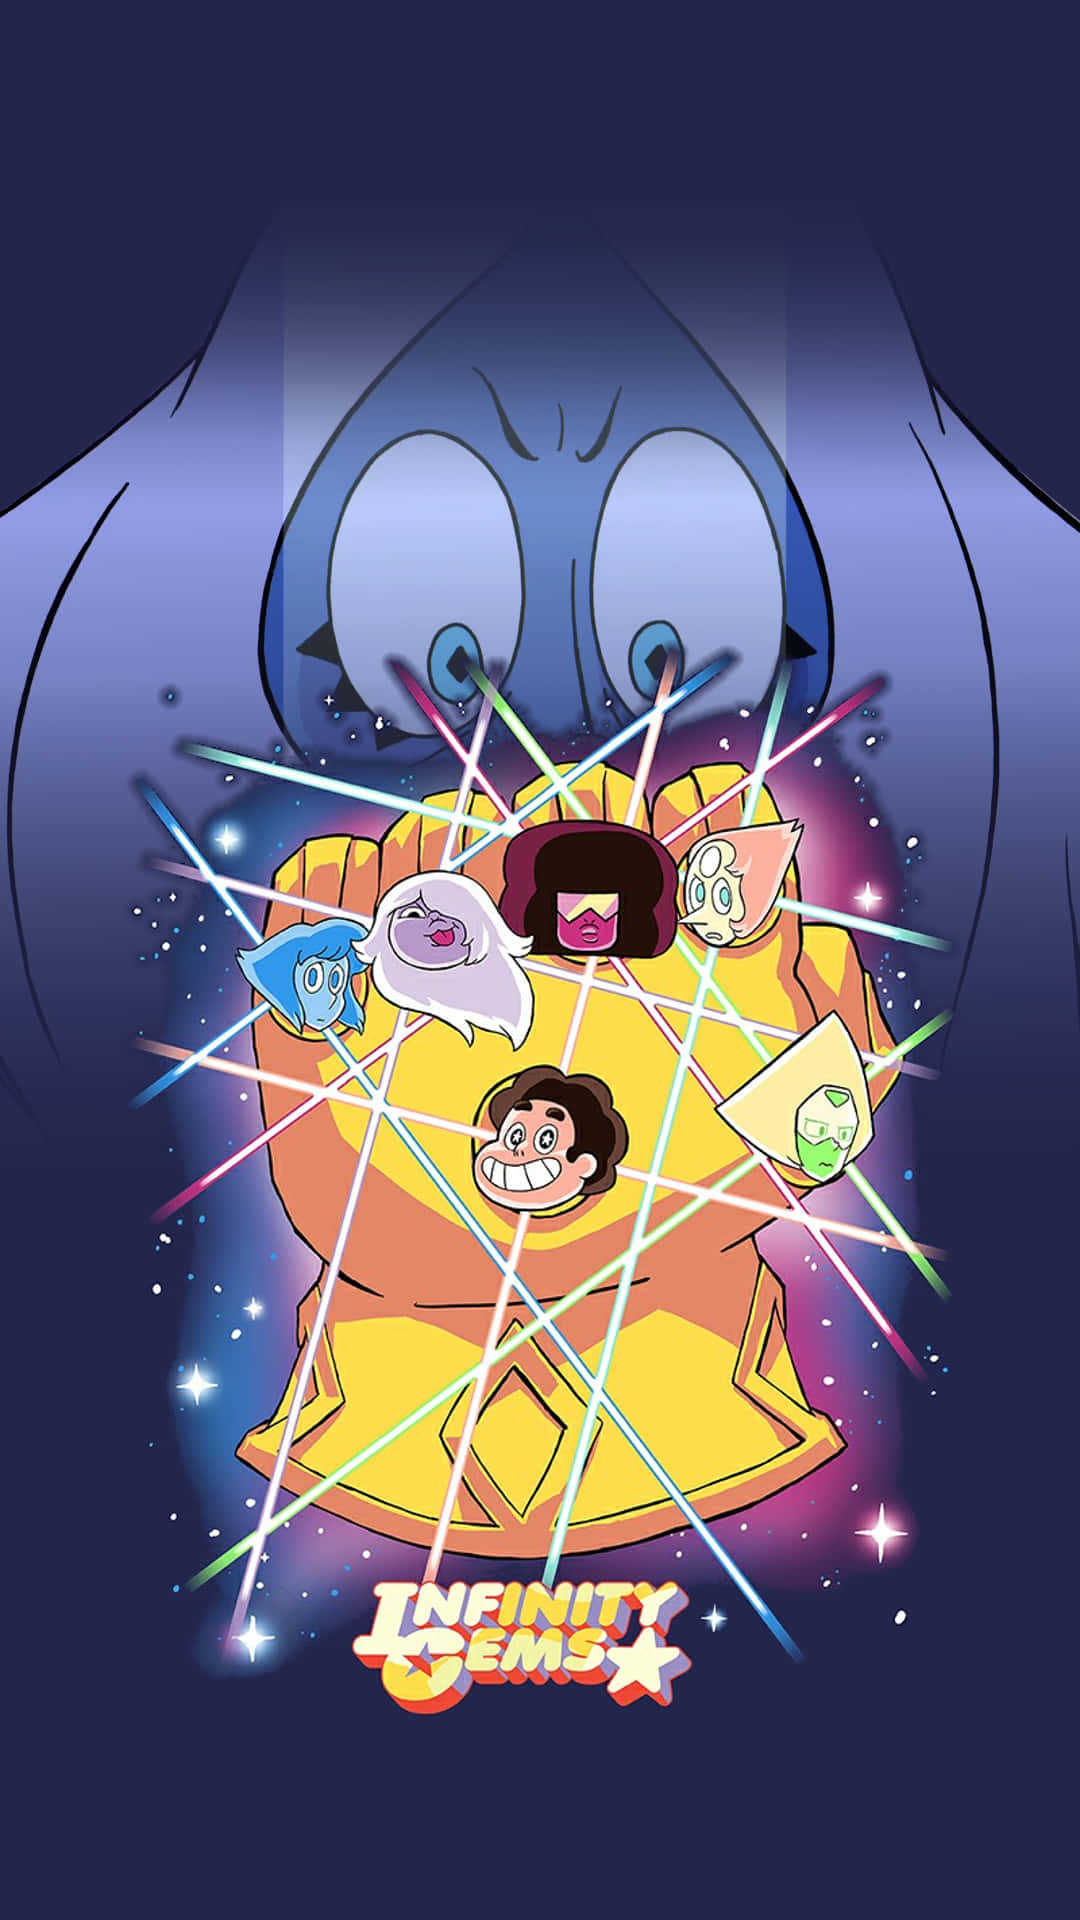 Personagensde Steven Universe - Liderados Por Steven, As Gemas Do Cristal Se Destacam. Papel de Parede